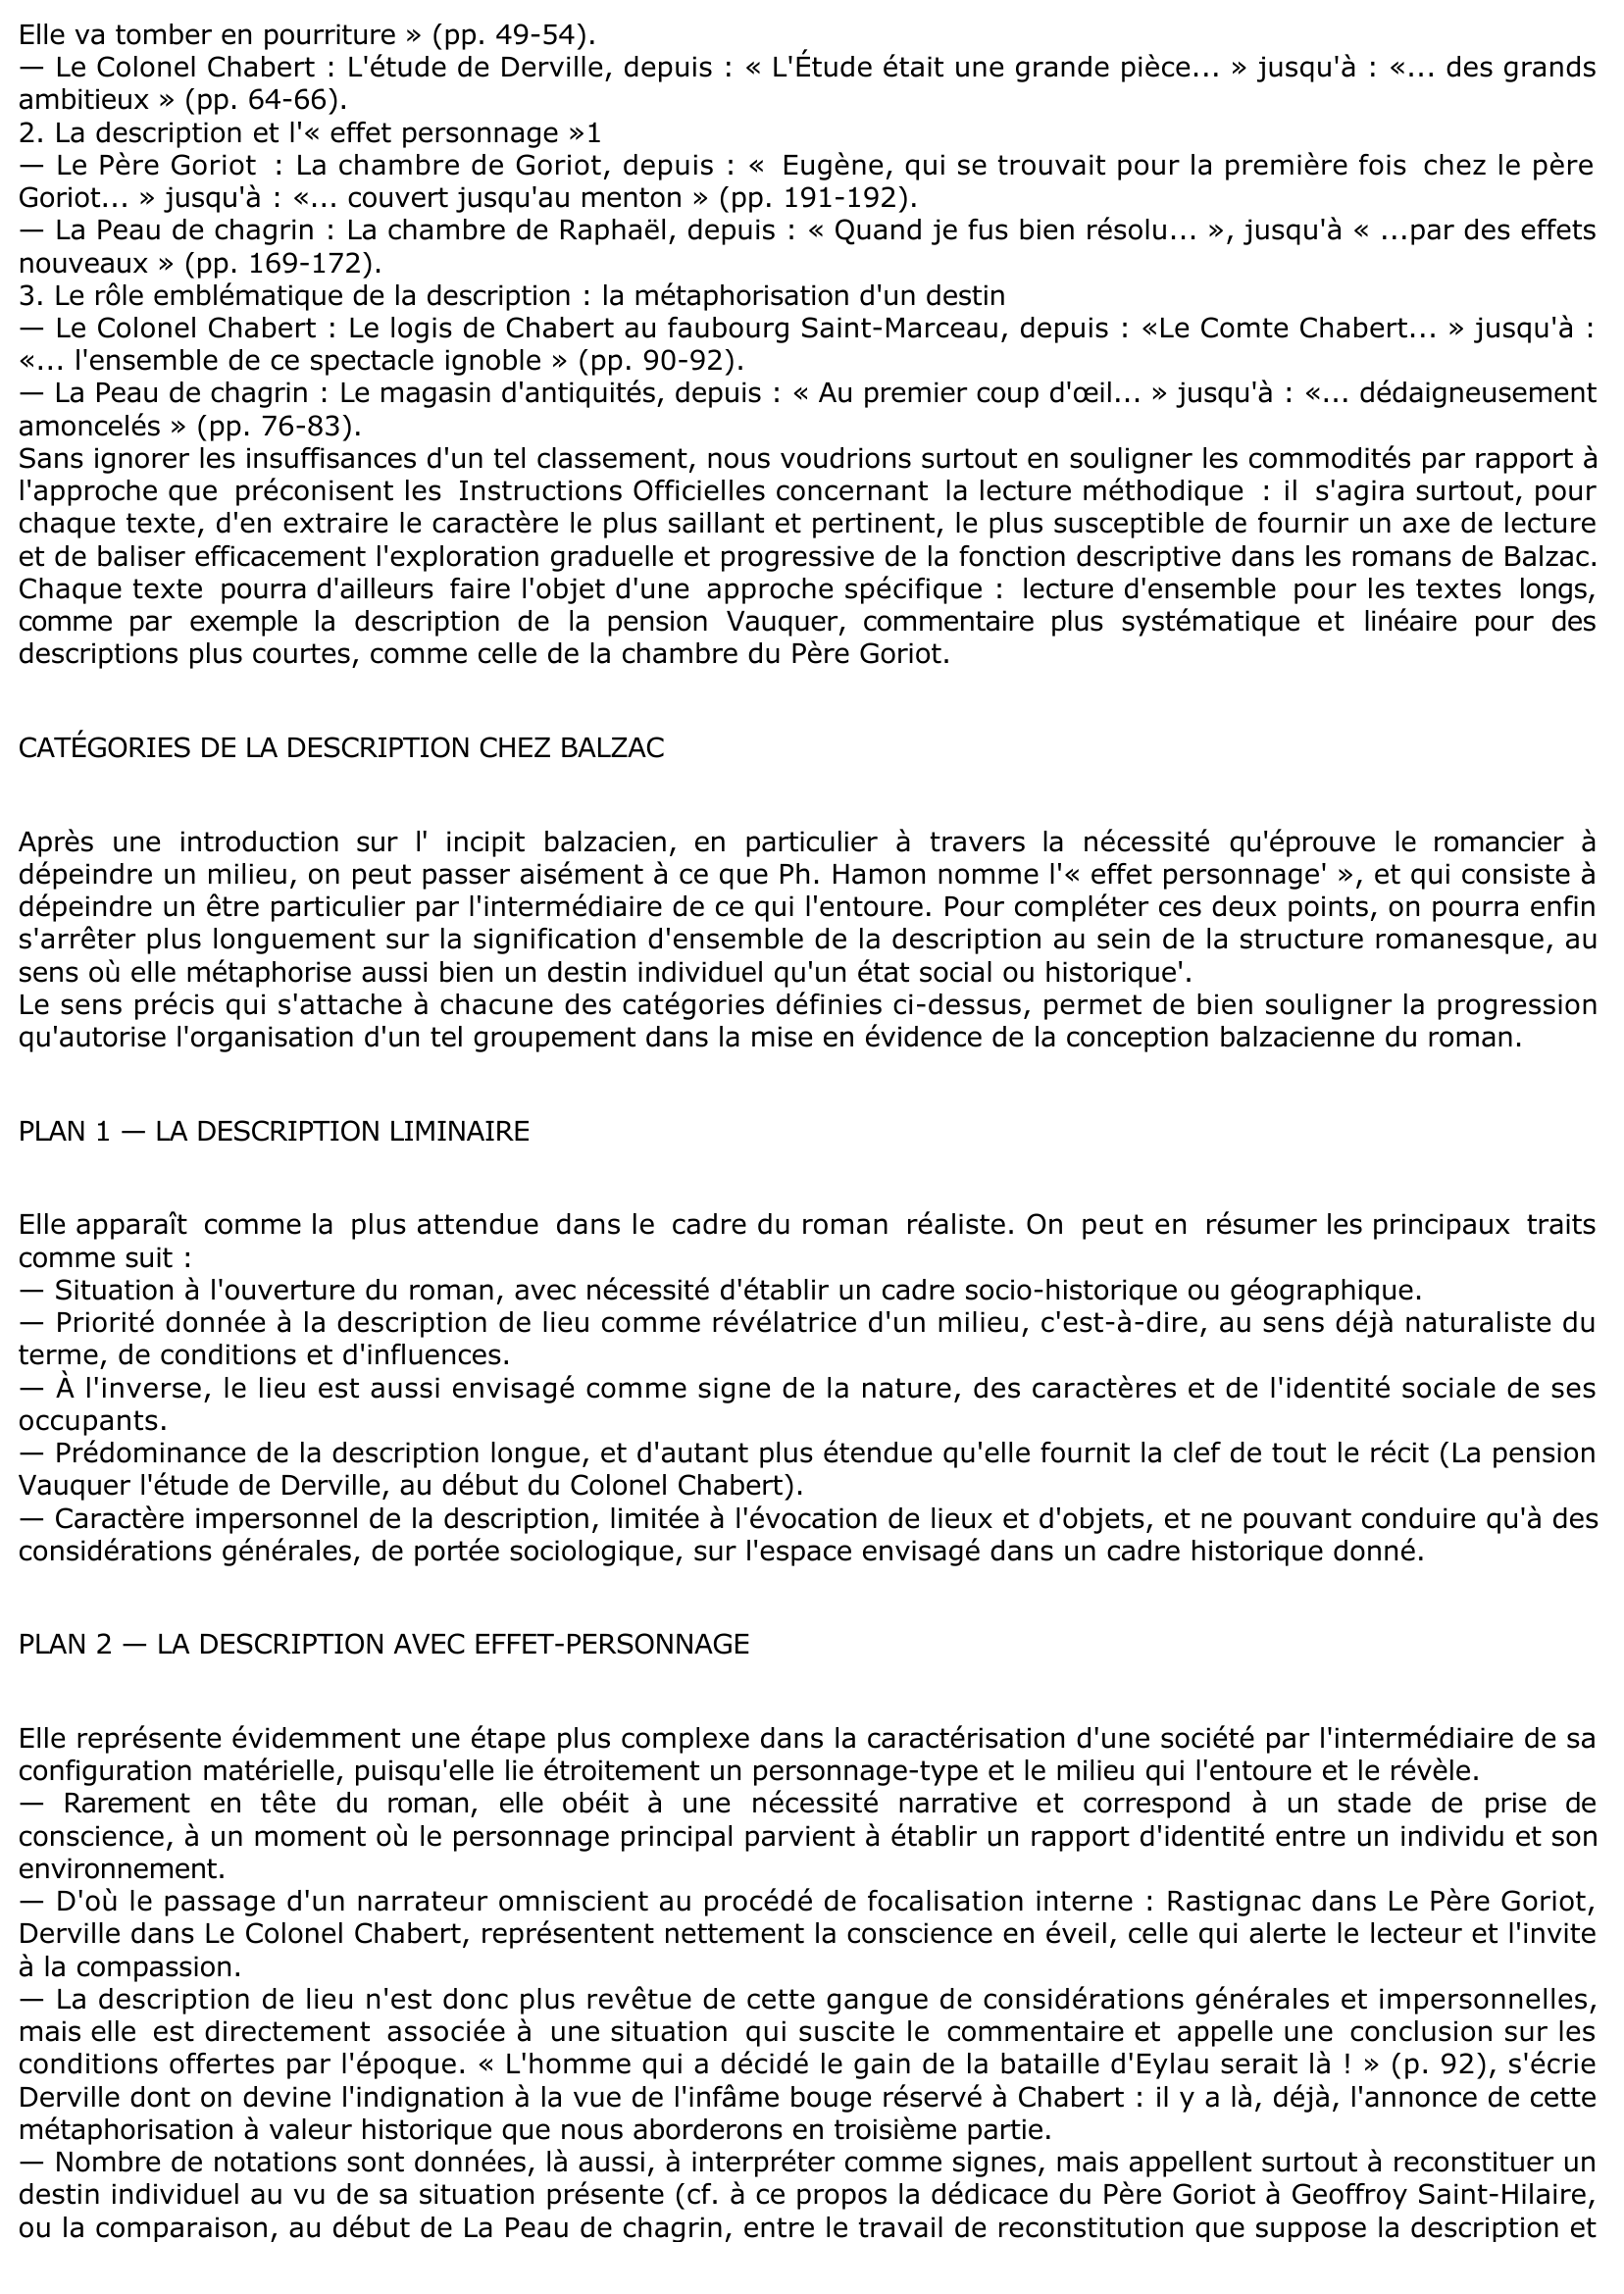 Prévisualisation du document « La description chez Balzac »